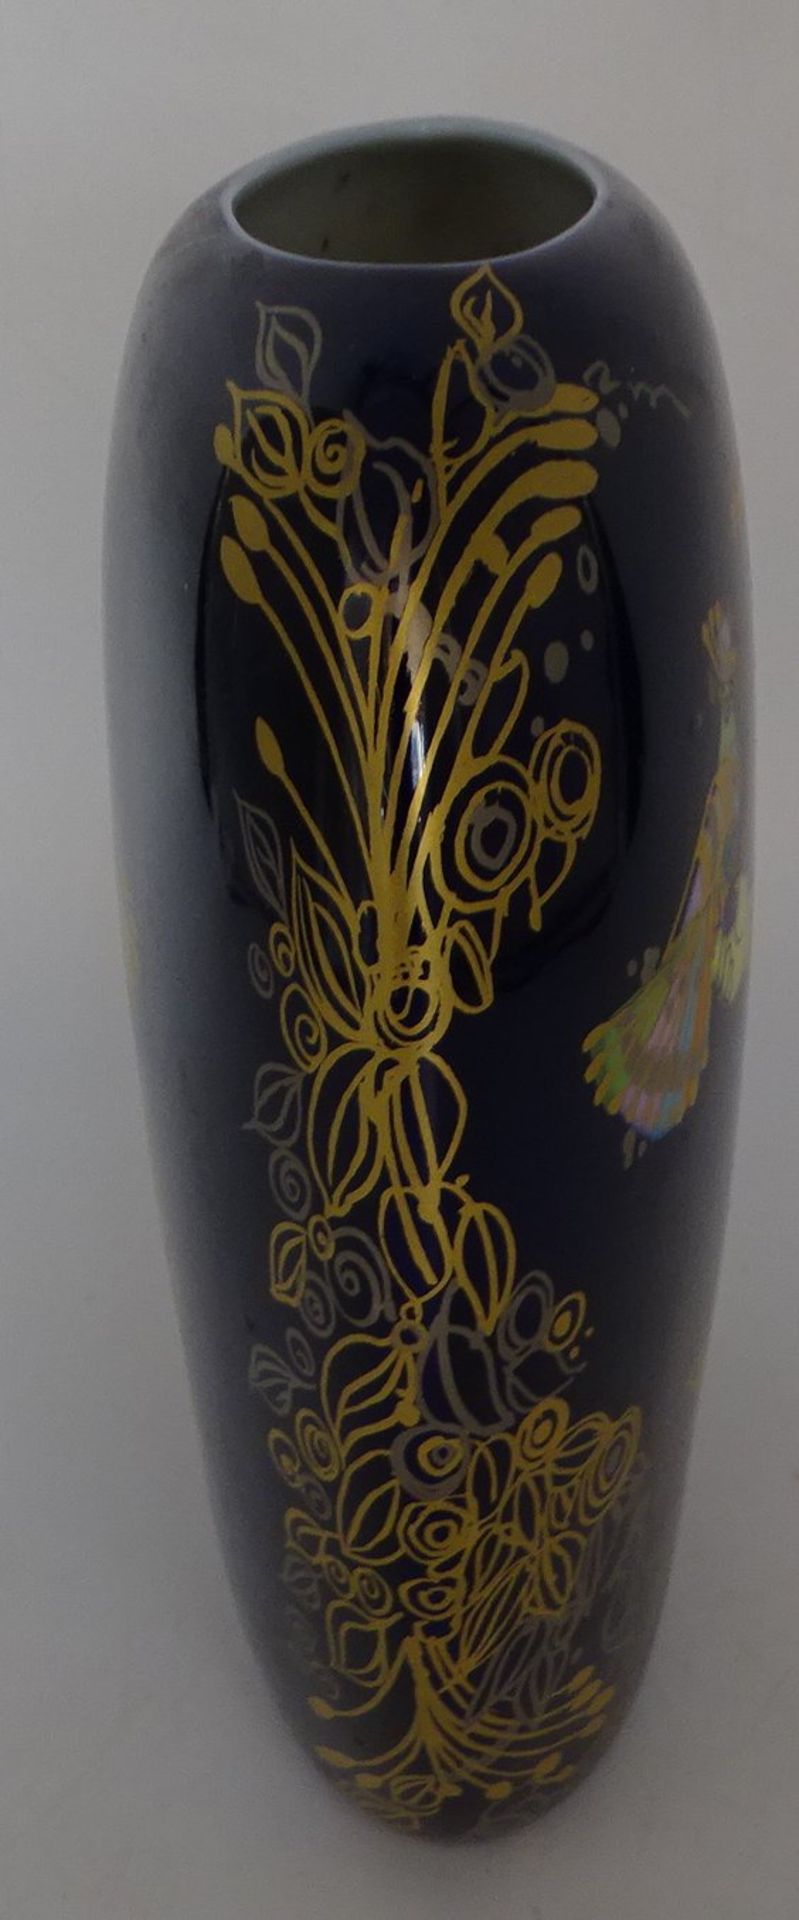 gr. Rosenthal-Vase von B. Winblad, signiert, H-21 cm, B-21 cm - Bild 3 aus 4